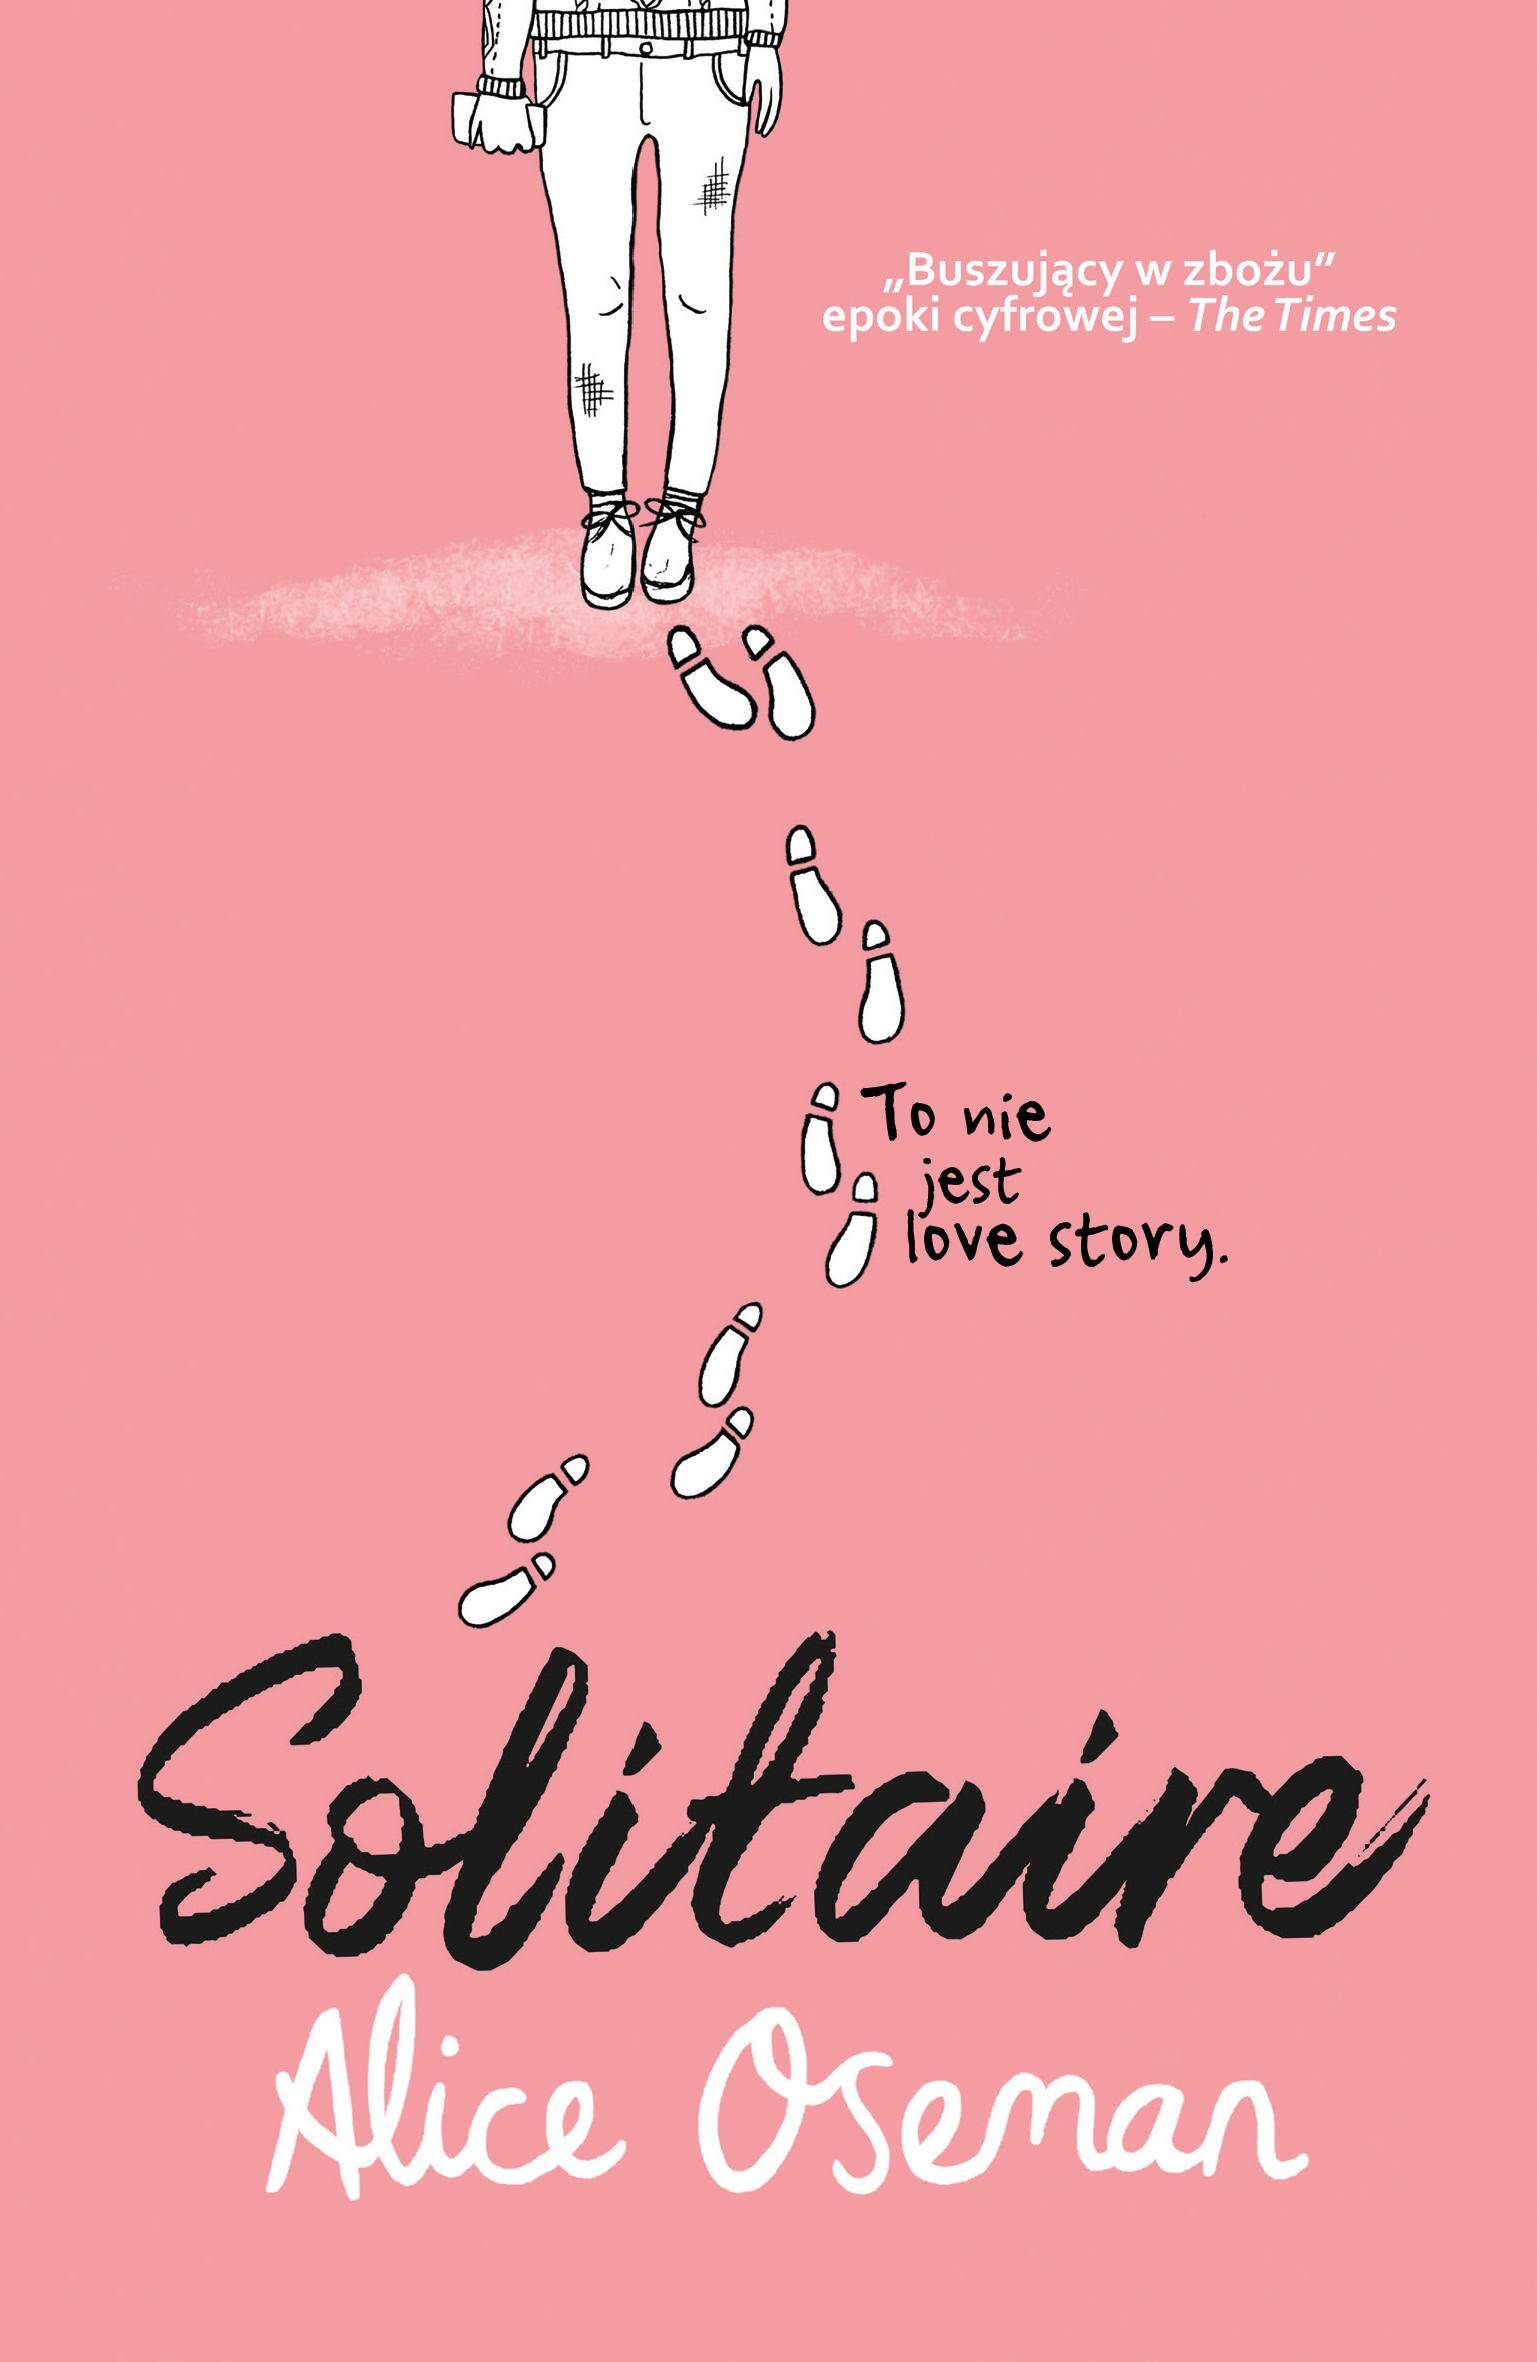 Solitaire/ Alice Oseman